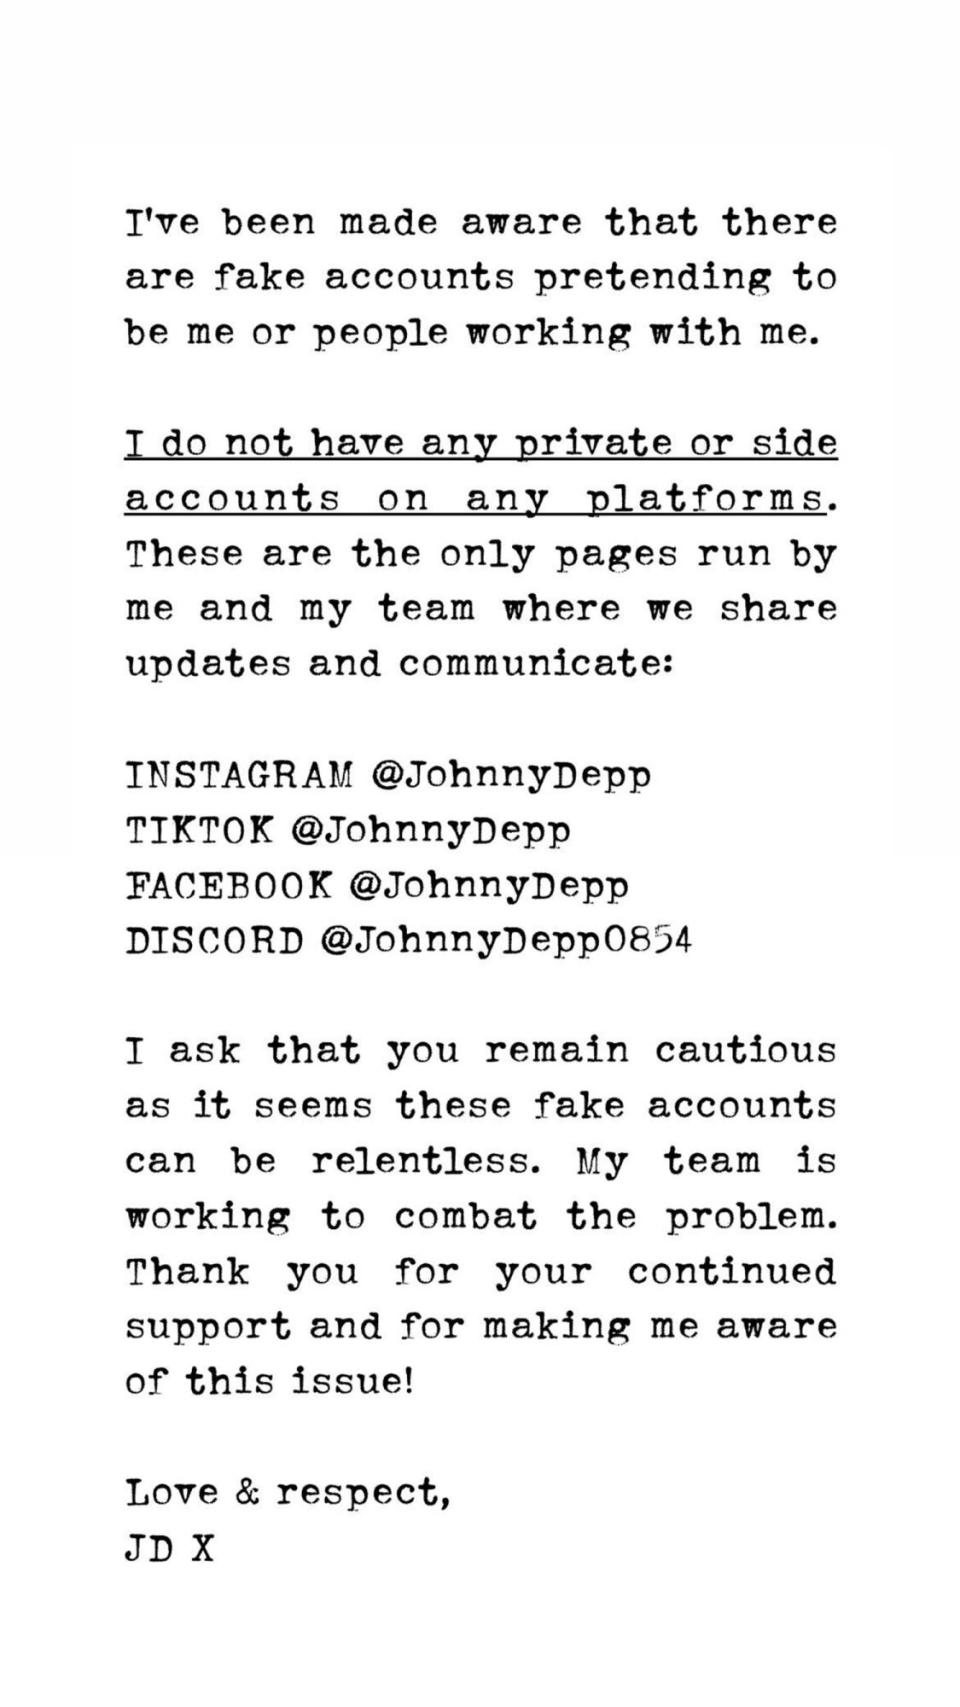 Johnny Depp instagram statement